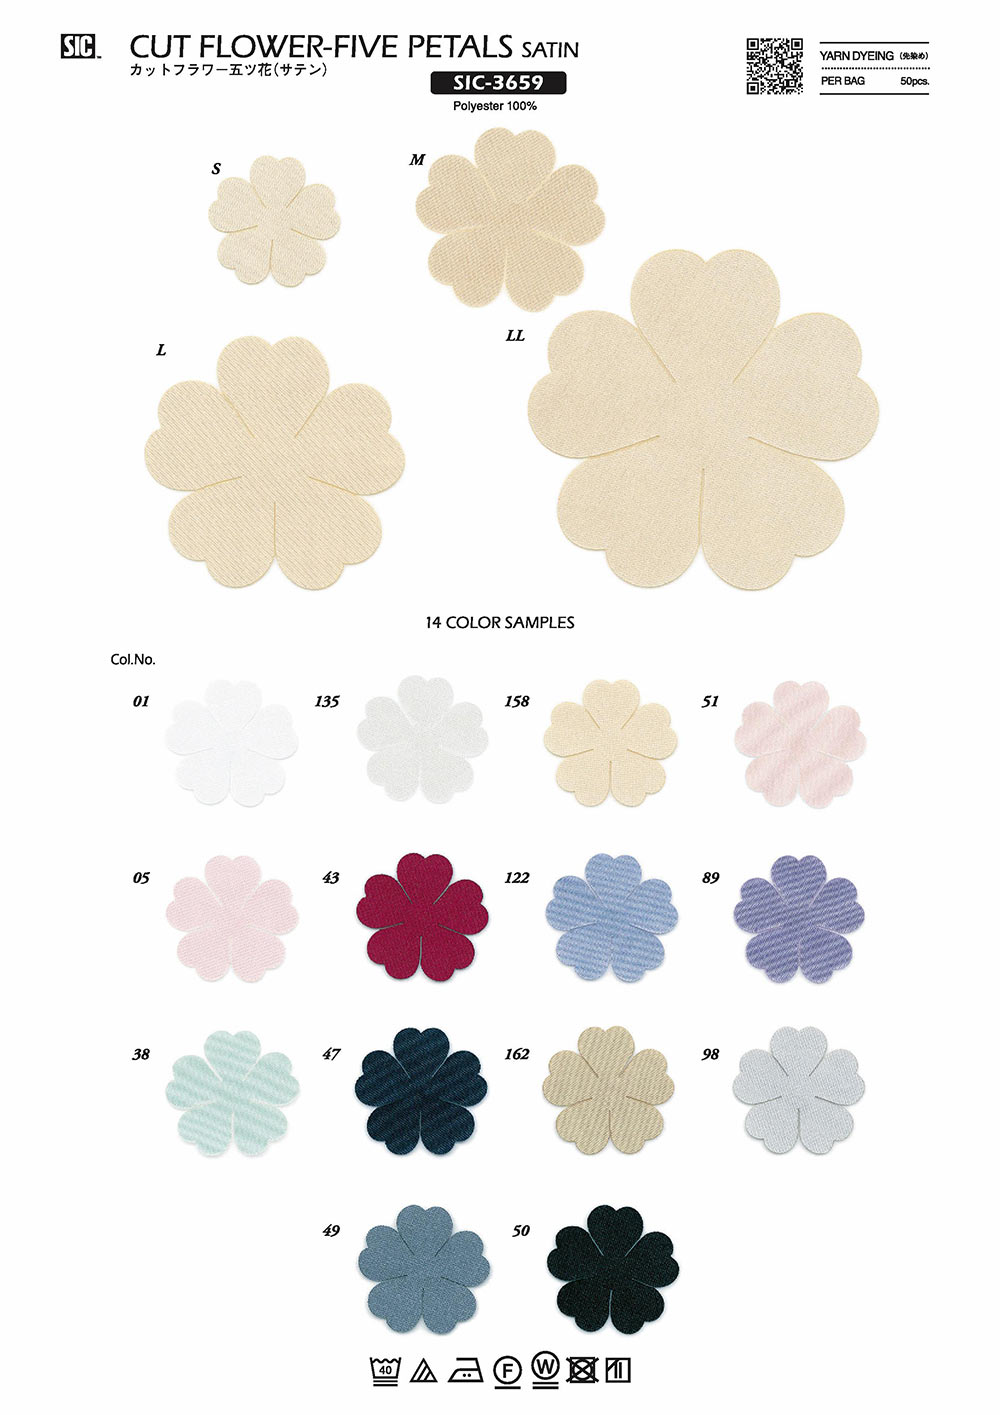 SIC-3659 Schnittblume Fünf Blumen (Satin)[Verschiedene Waren Und Andere] SHINDO(SIC)